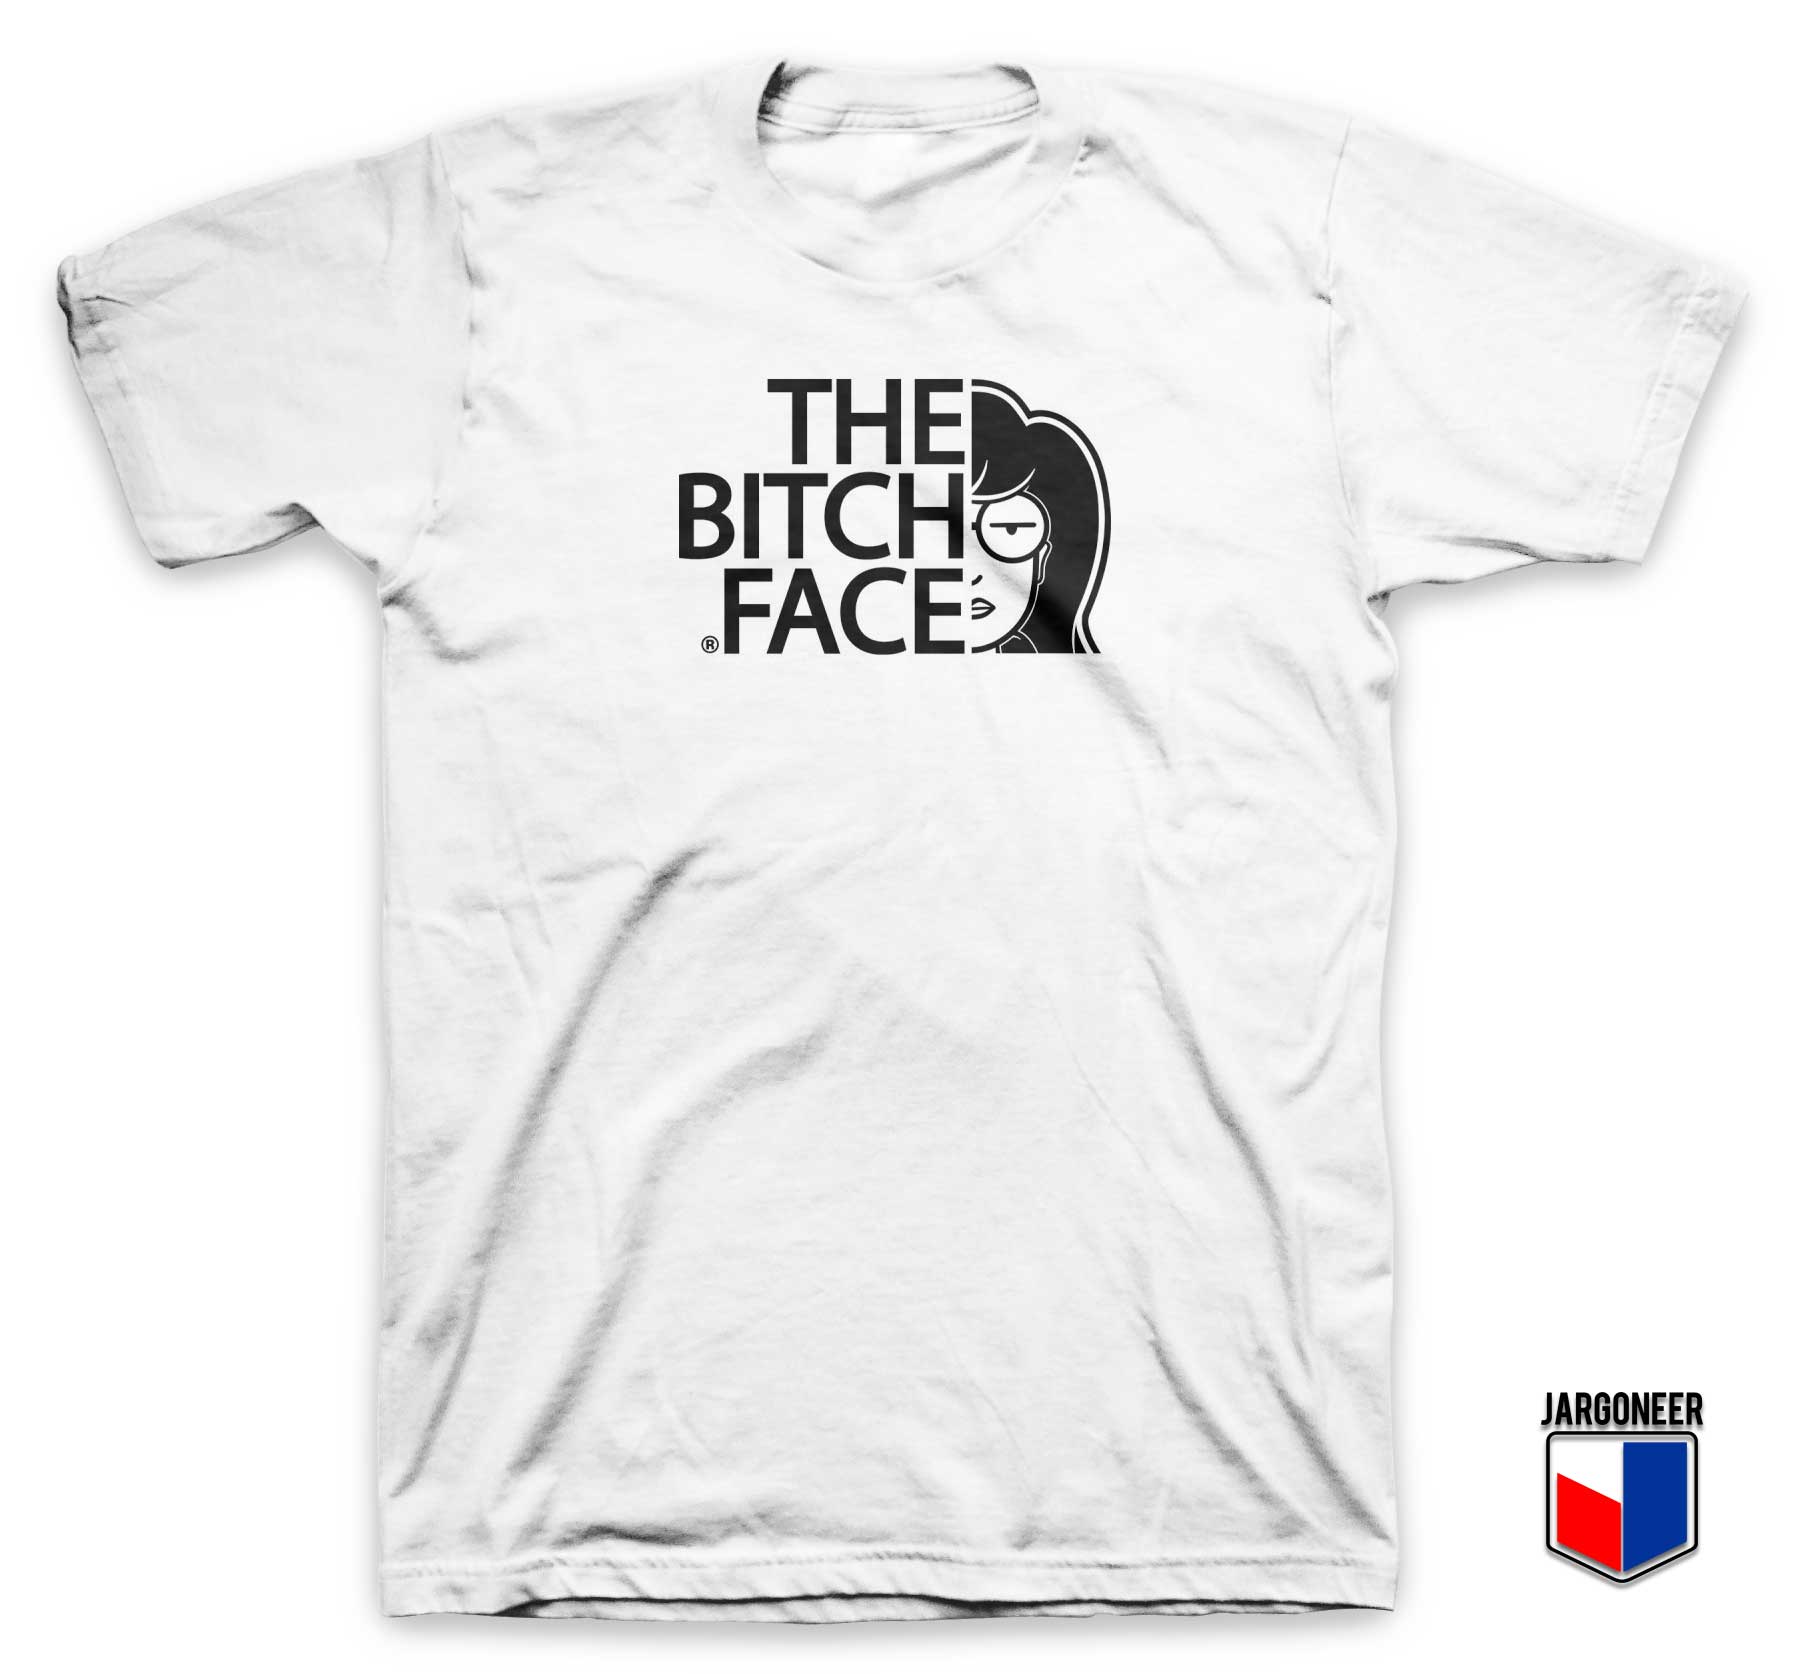 The Bitch Face Parody T Shirt - Shop Unique Graphic Cool Shirt Designs